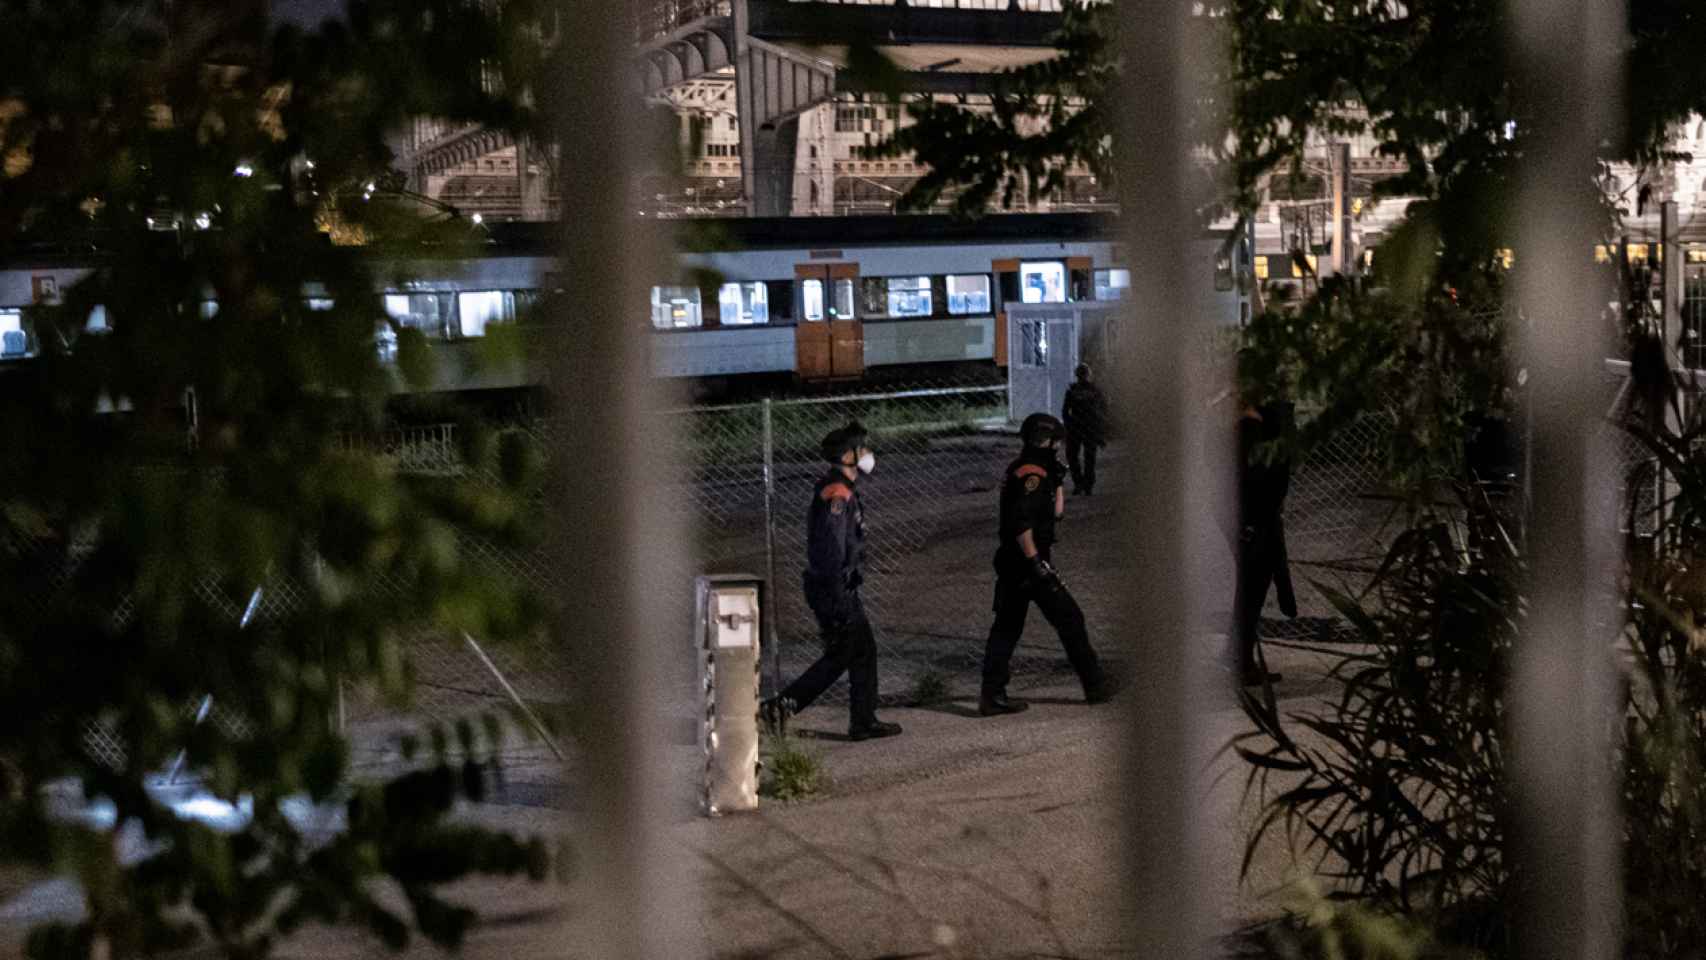 Gran despliegue policial policial en la estación de Francia por un sintecho desarmado / PABLO MIRANZO